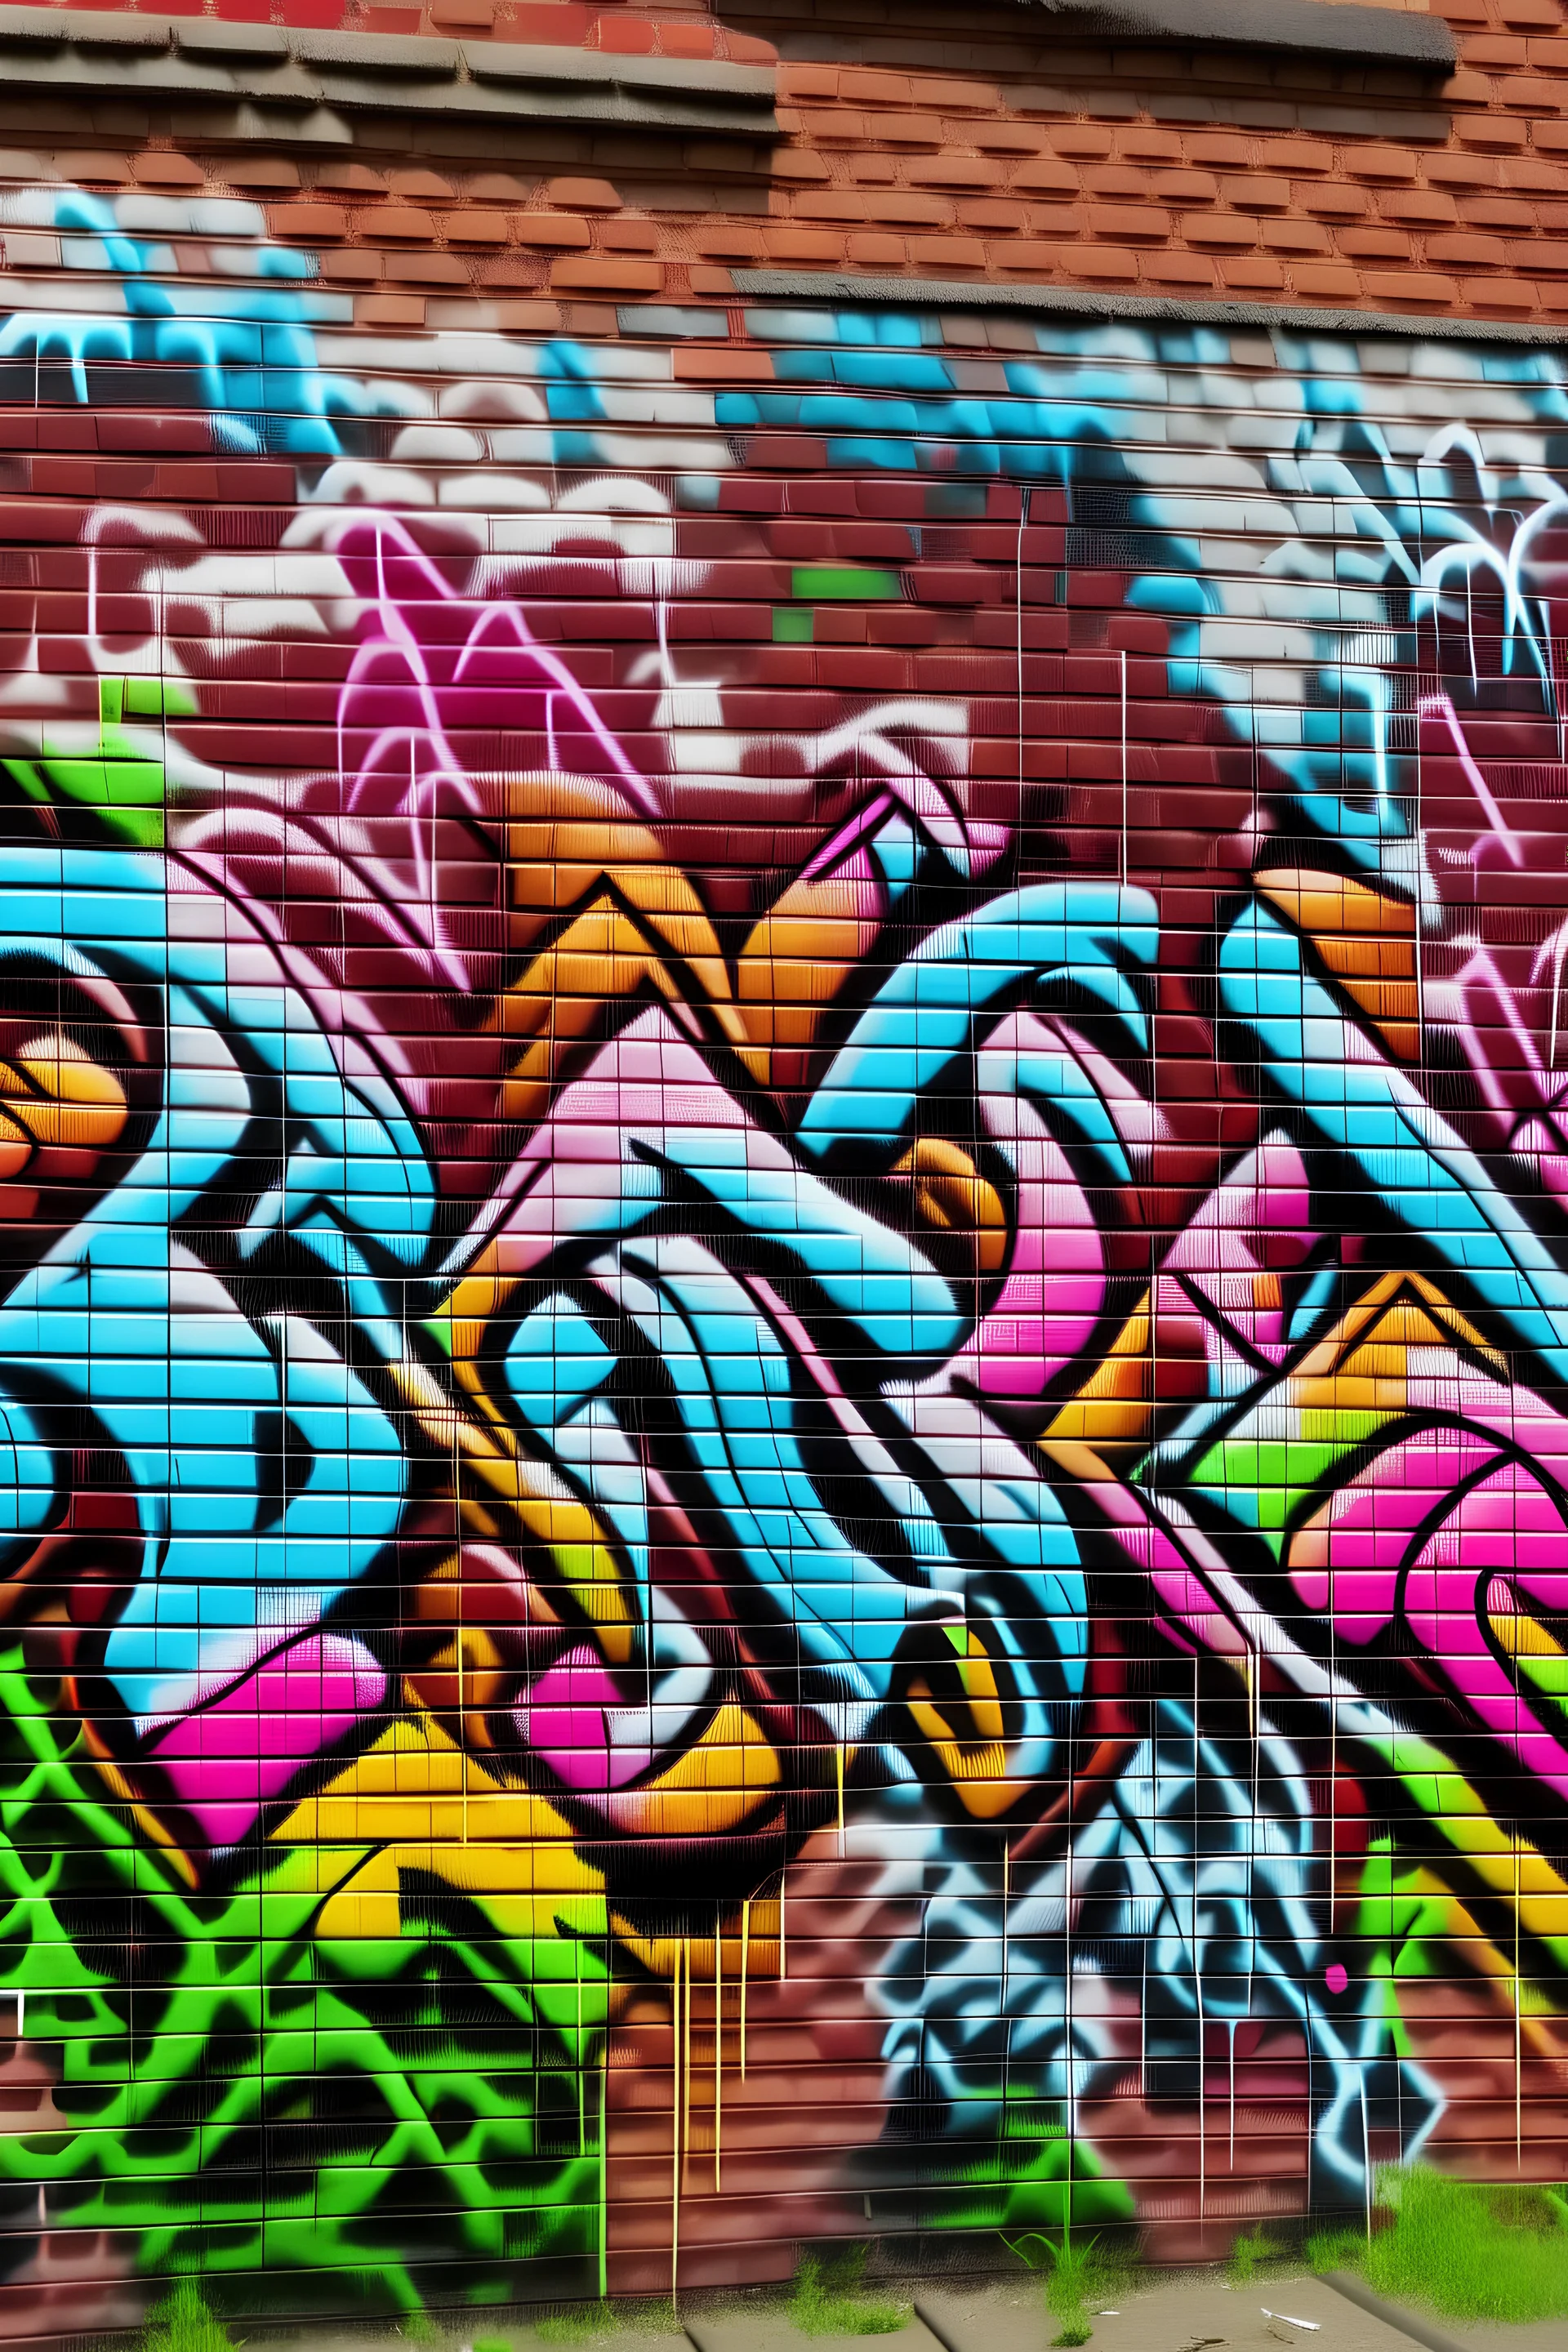 Graffiti on brick wall saying '' Graffiti og Streetart''